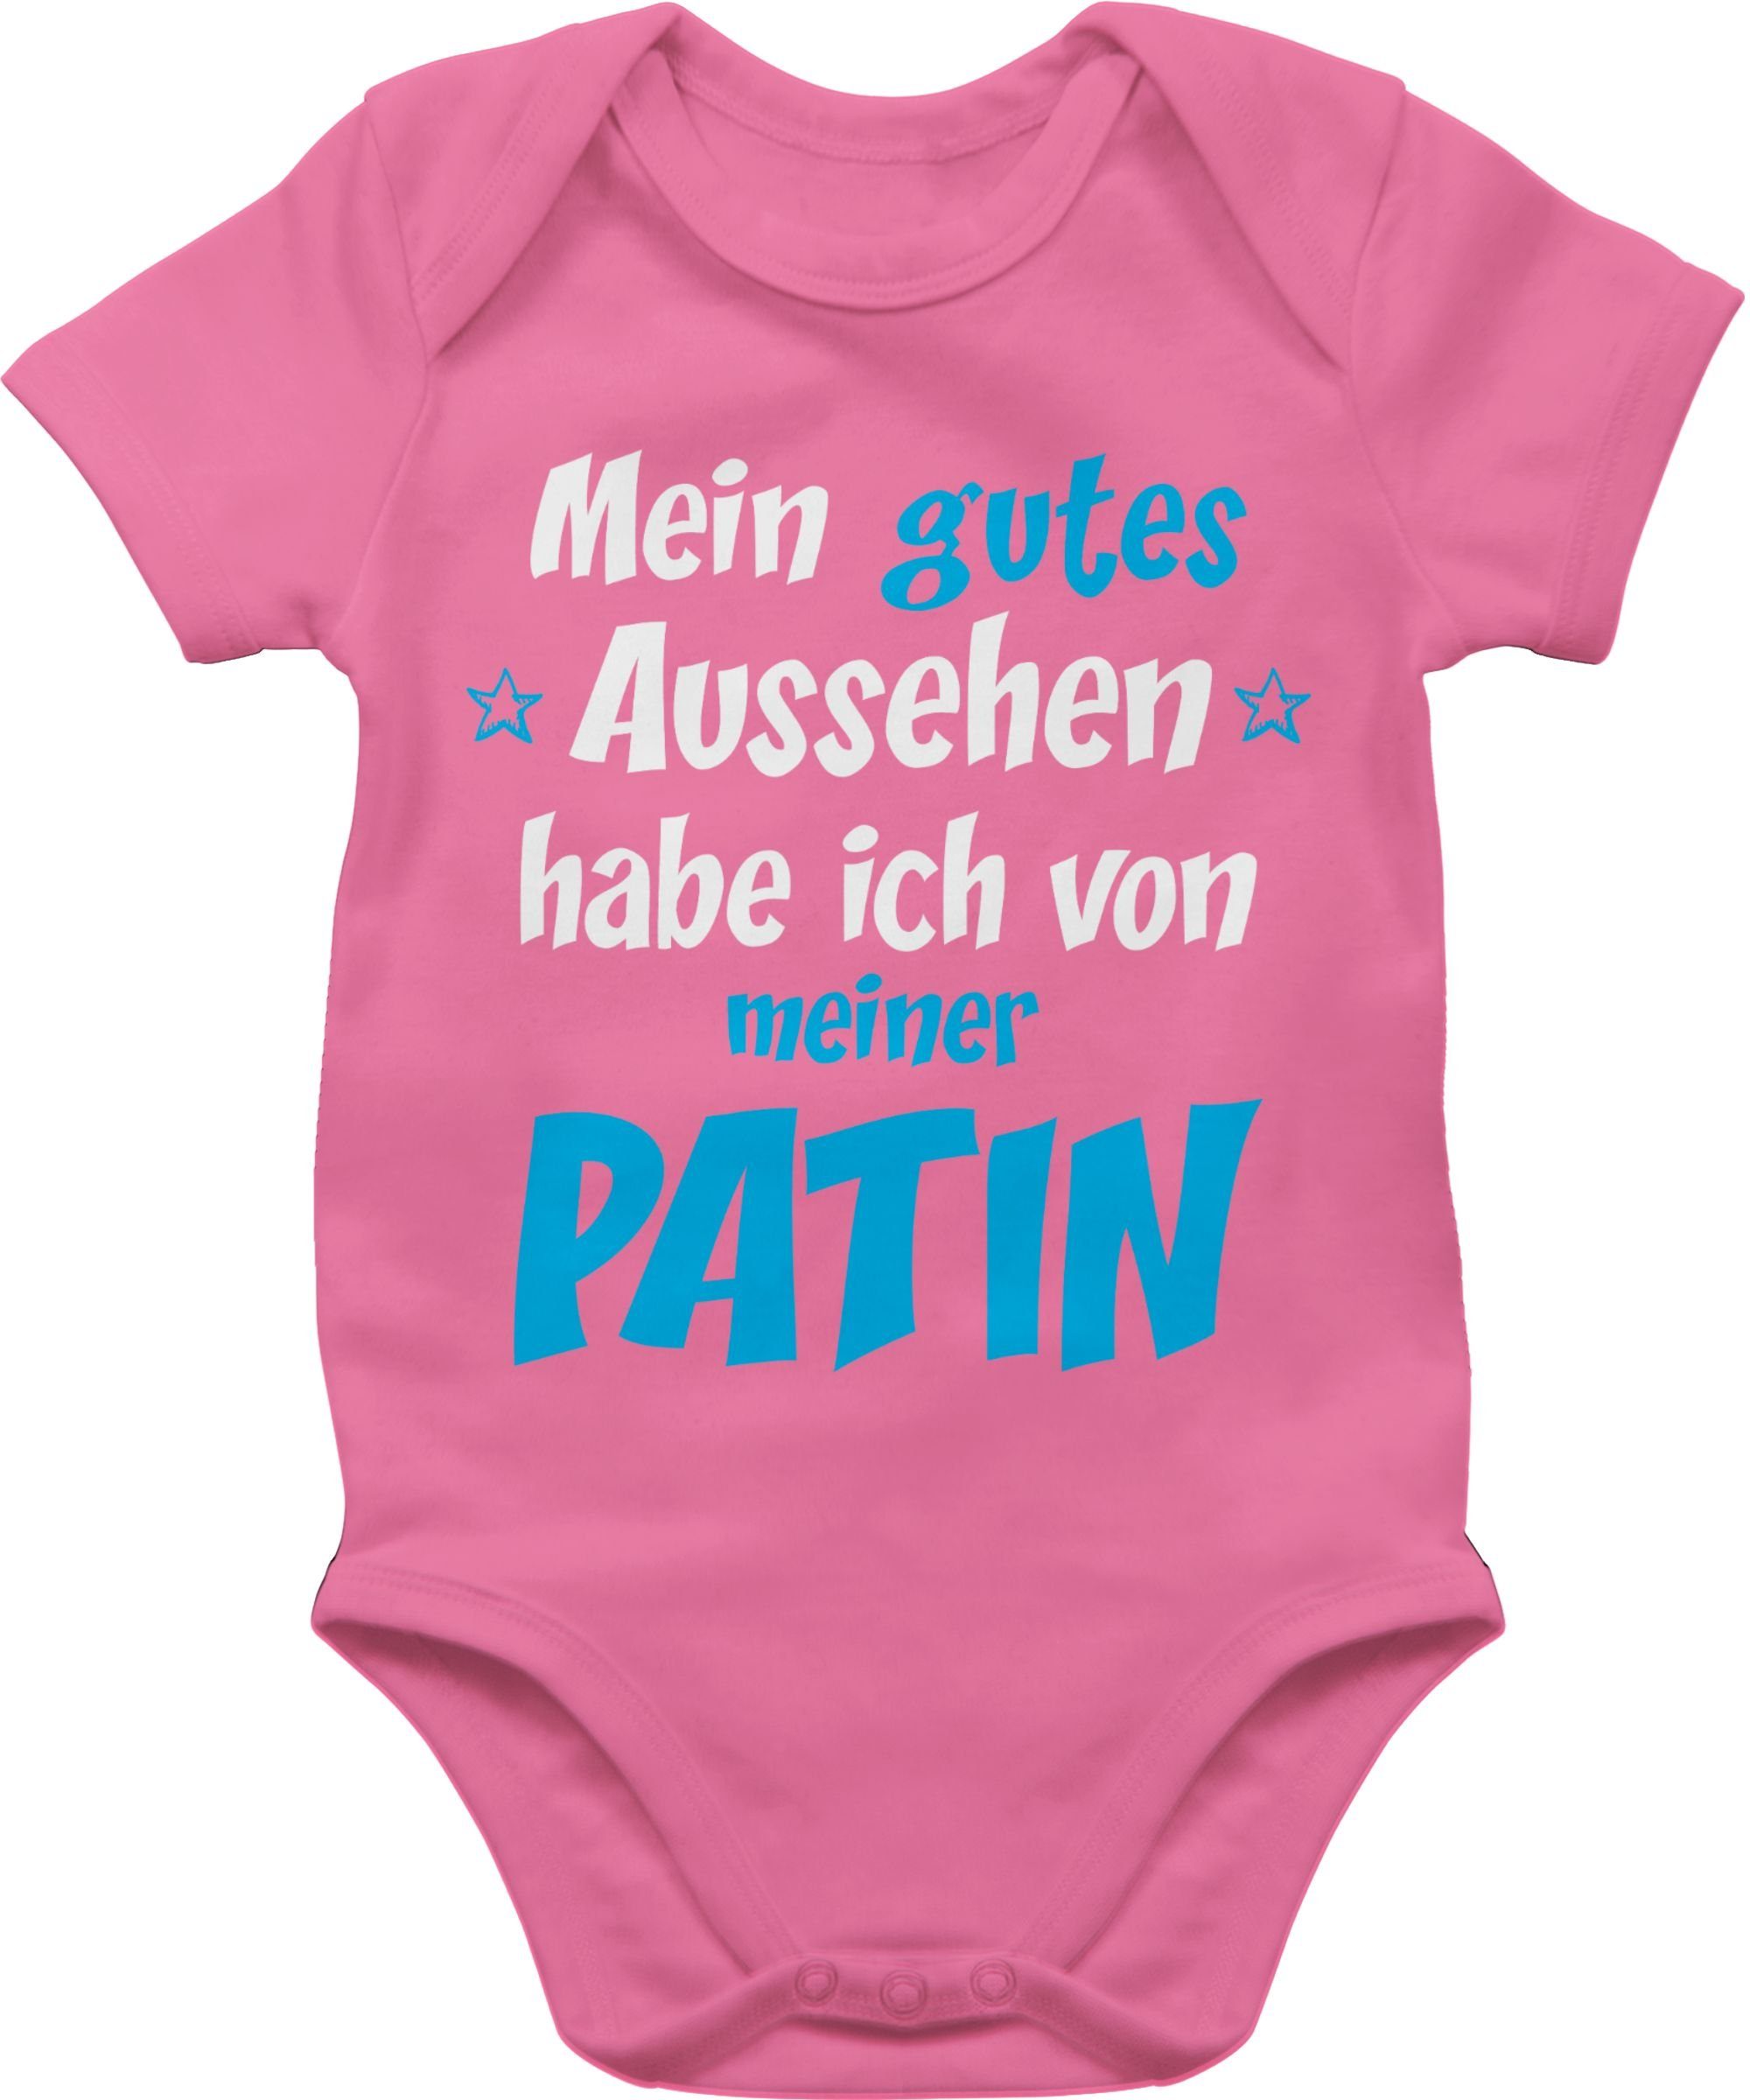 Patentante 2 Patin Pink Baby blau/weiß Shirtbody Shirtracer - Gutes Aussehen Junge